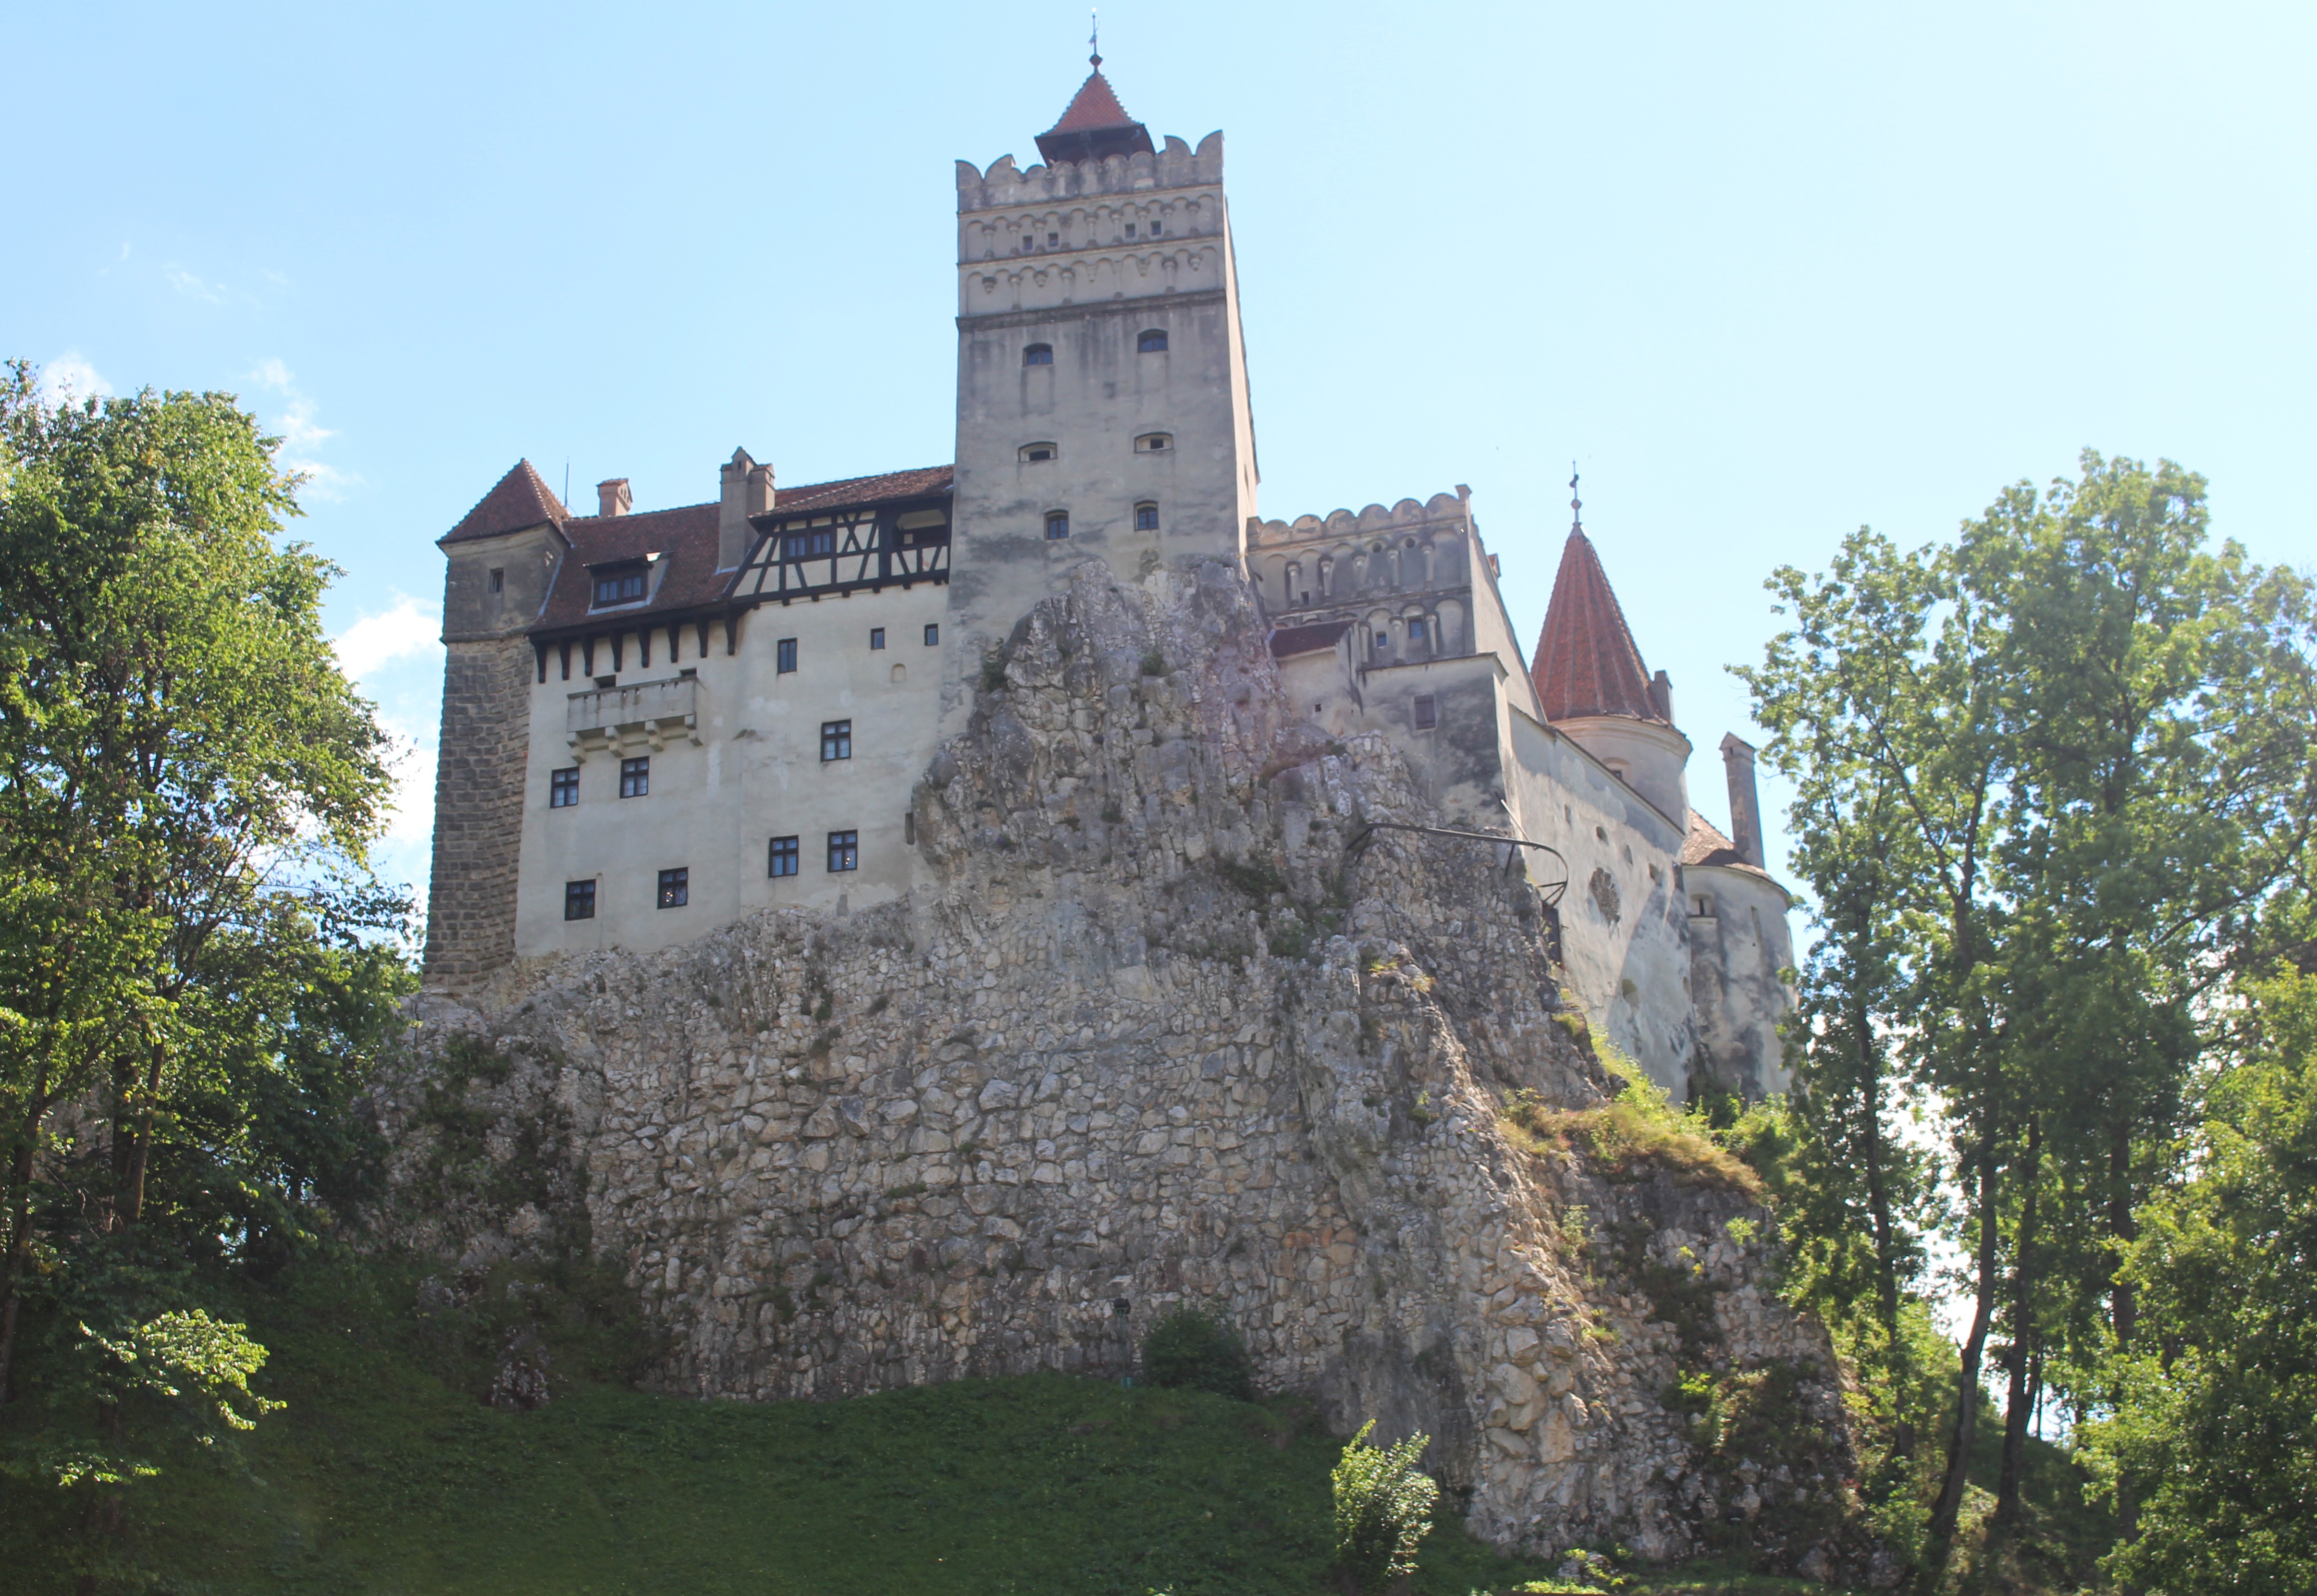 Le château de Bran, monument historique national où aurait vécu Dracula, est aujourd'hui le lieu le plus visité de Roumanie